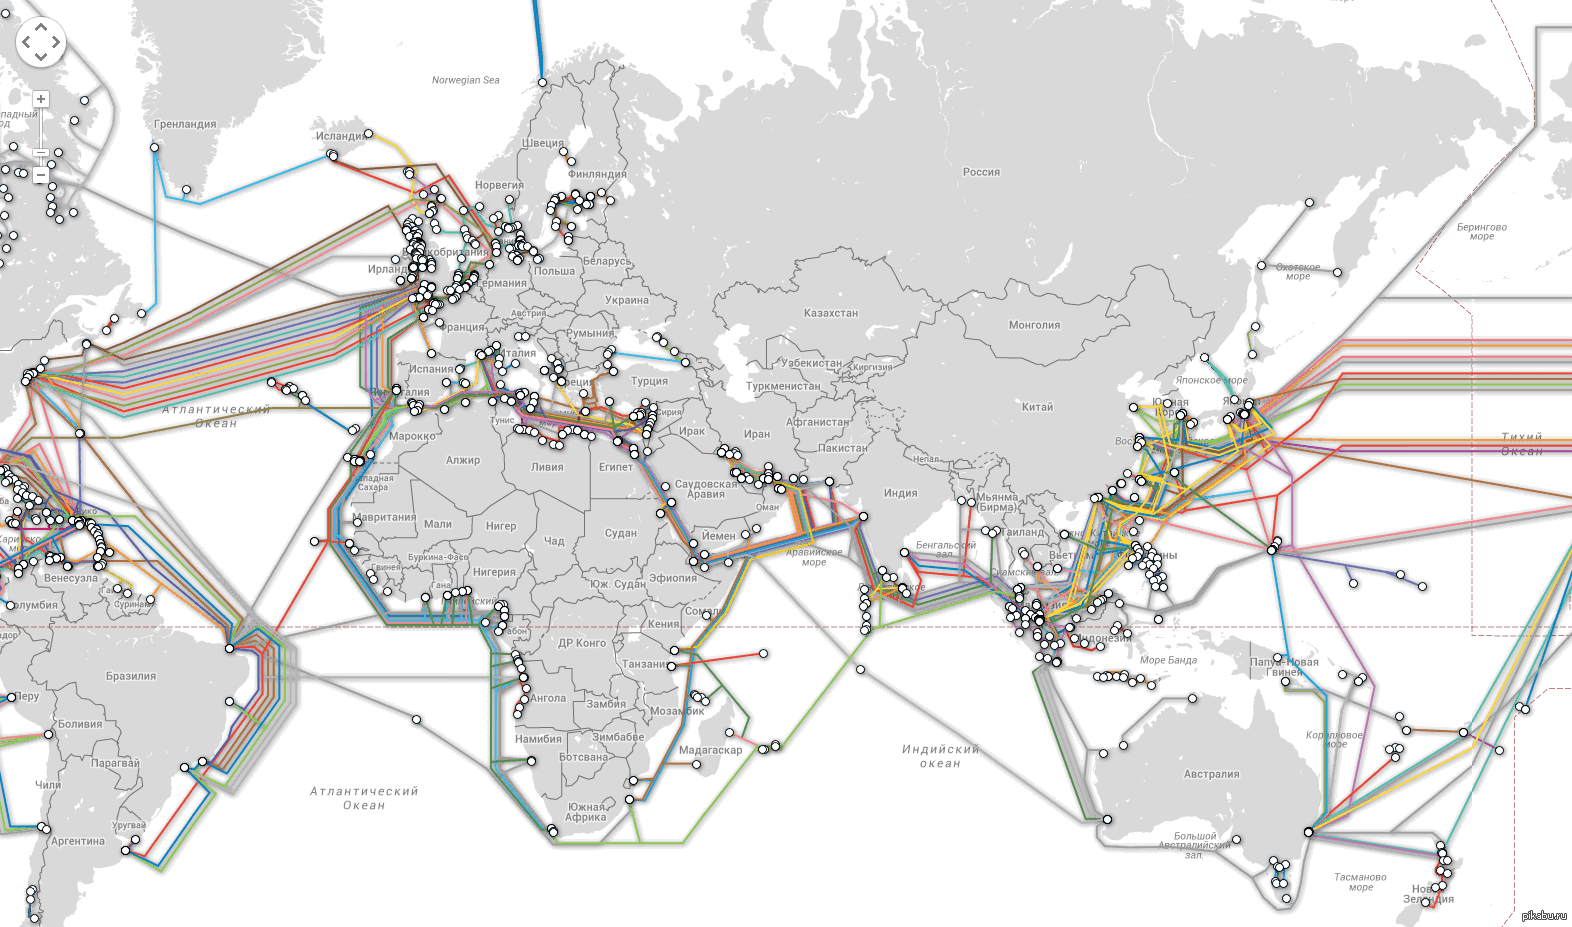 Что такое интернет кабели. Карта интернет кабелей, соединяющих континенты. Фото.